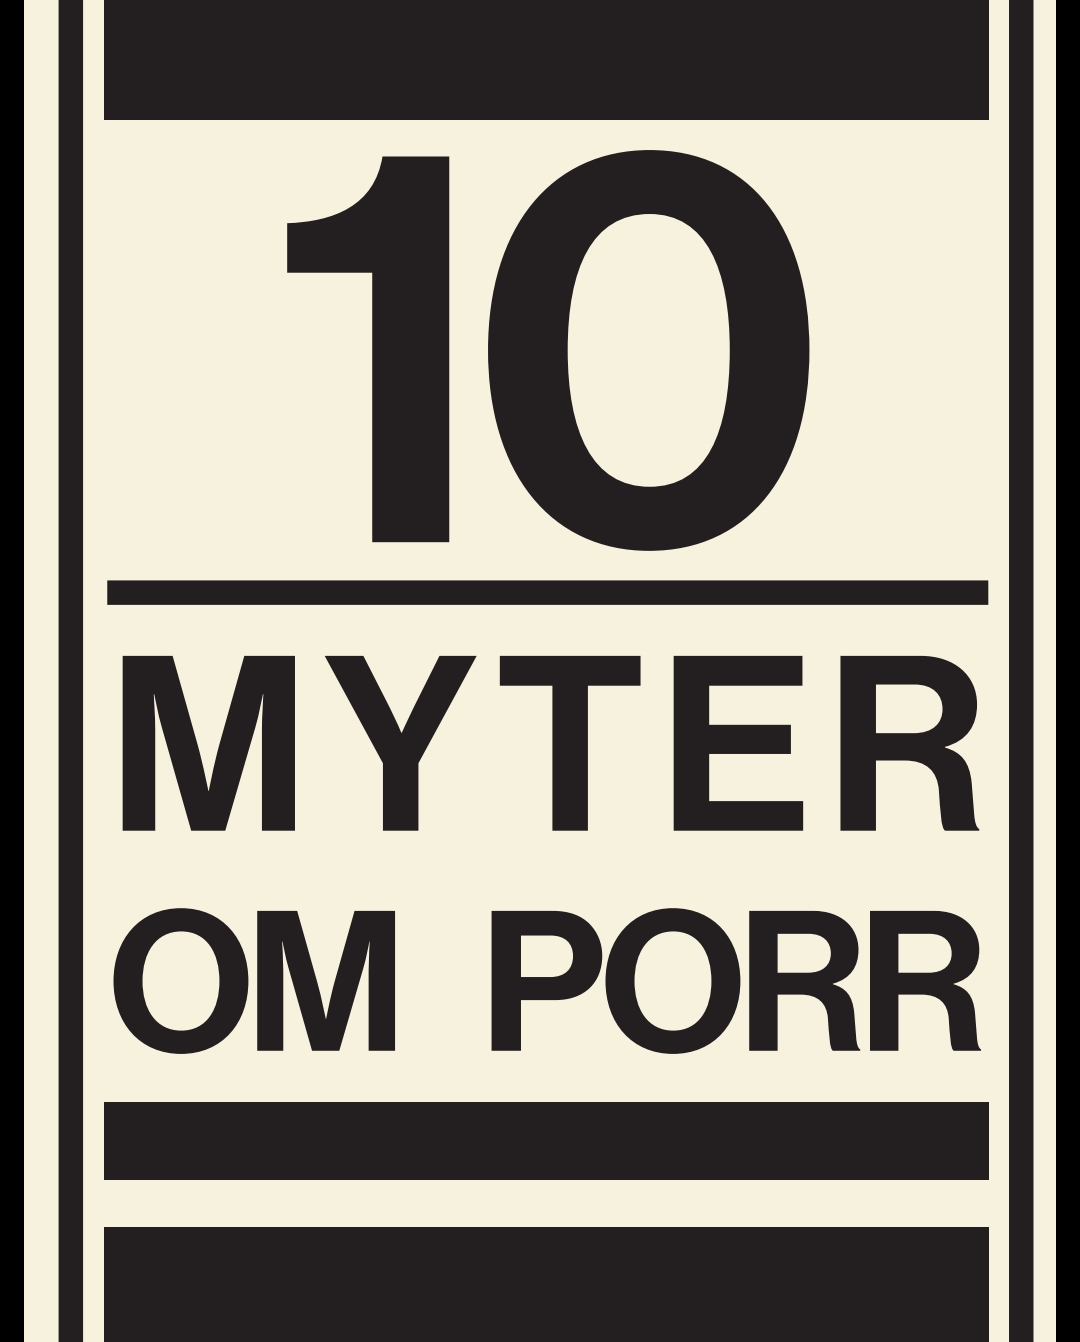 10 myter om porr bild